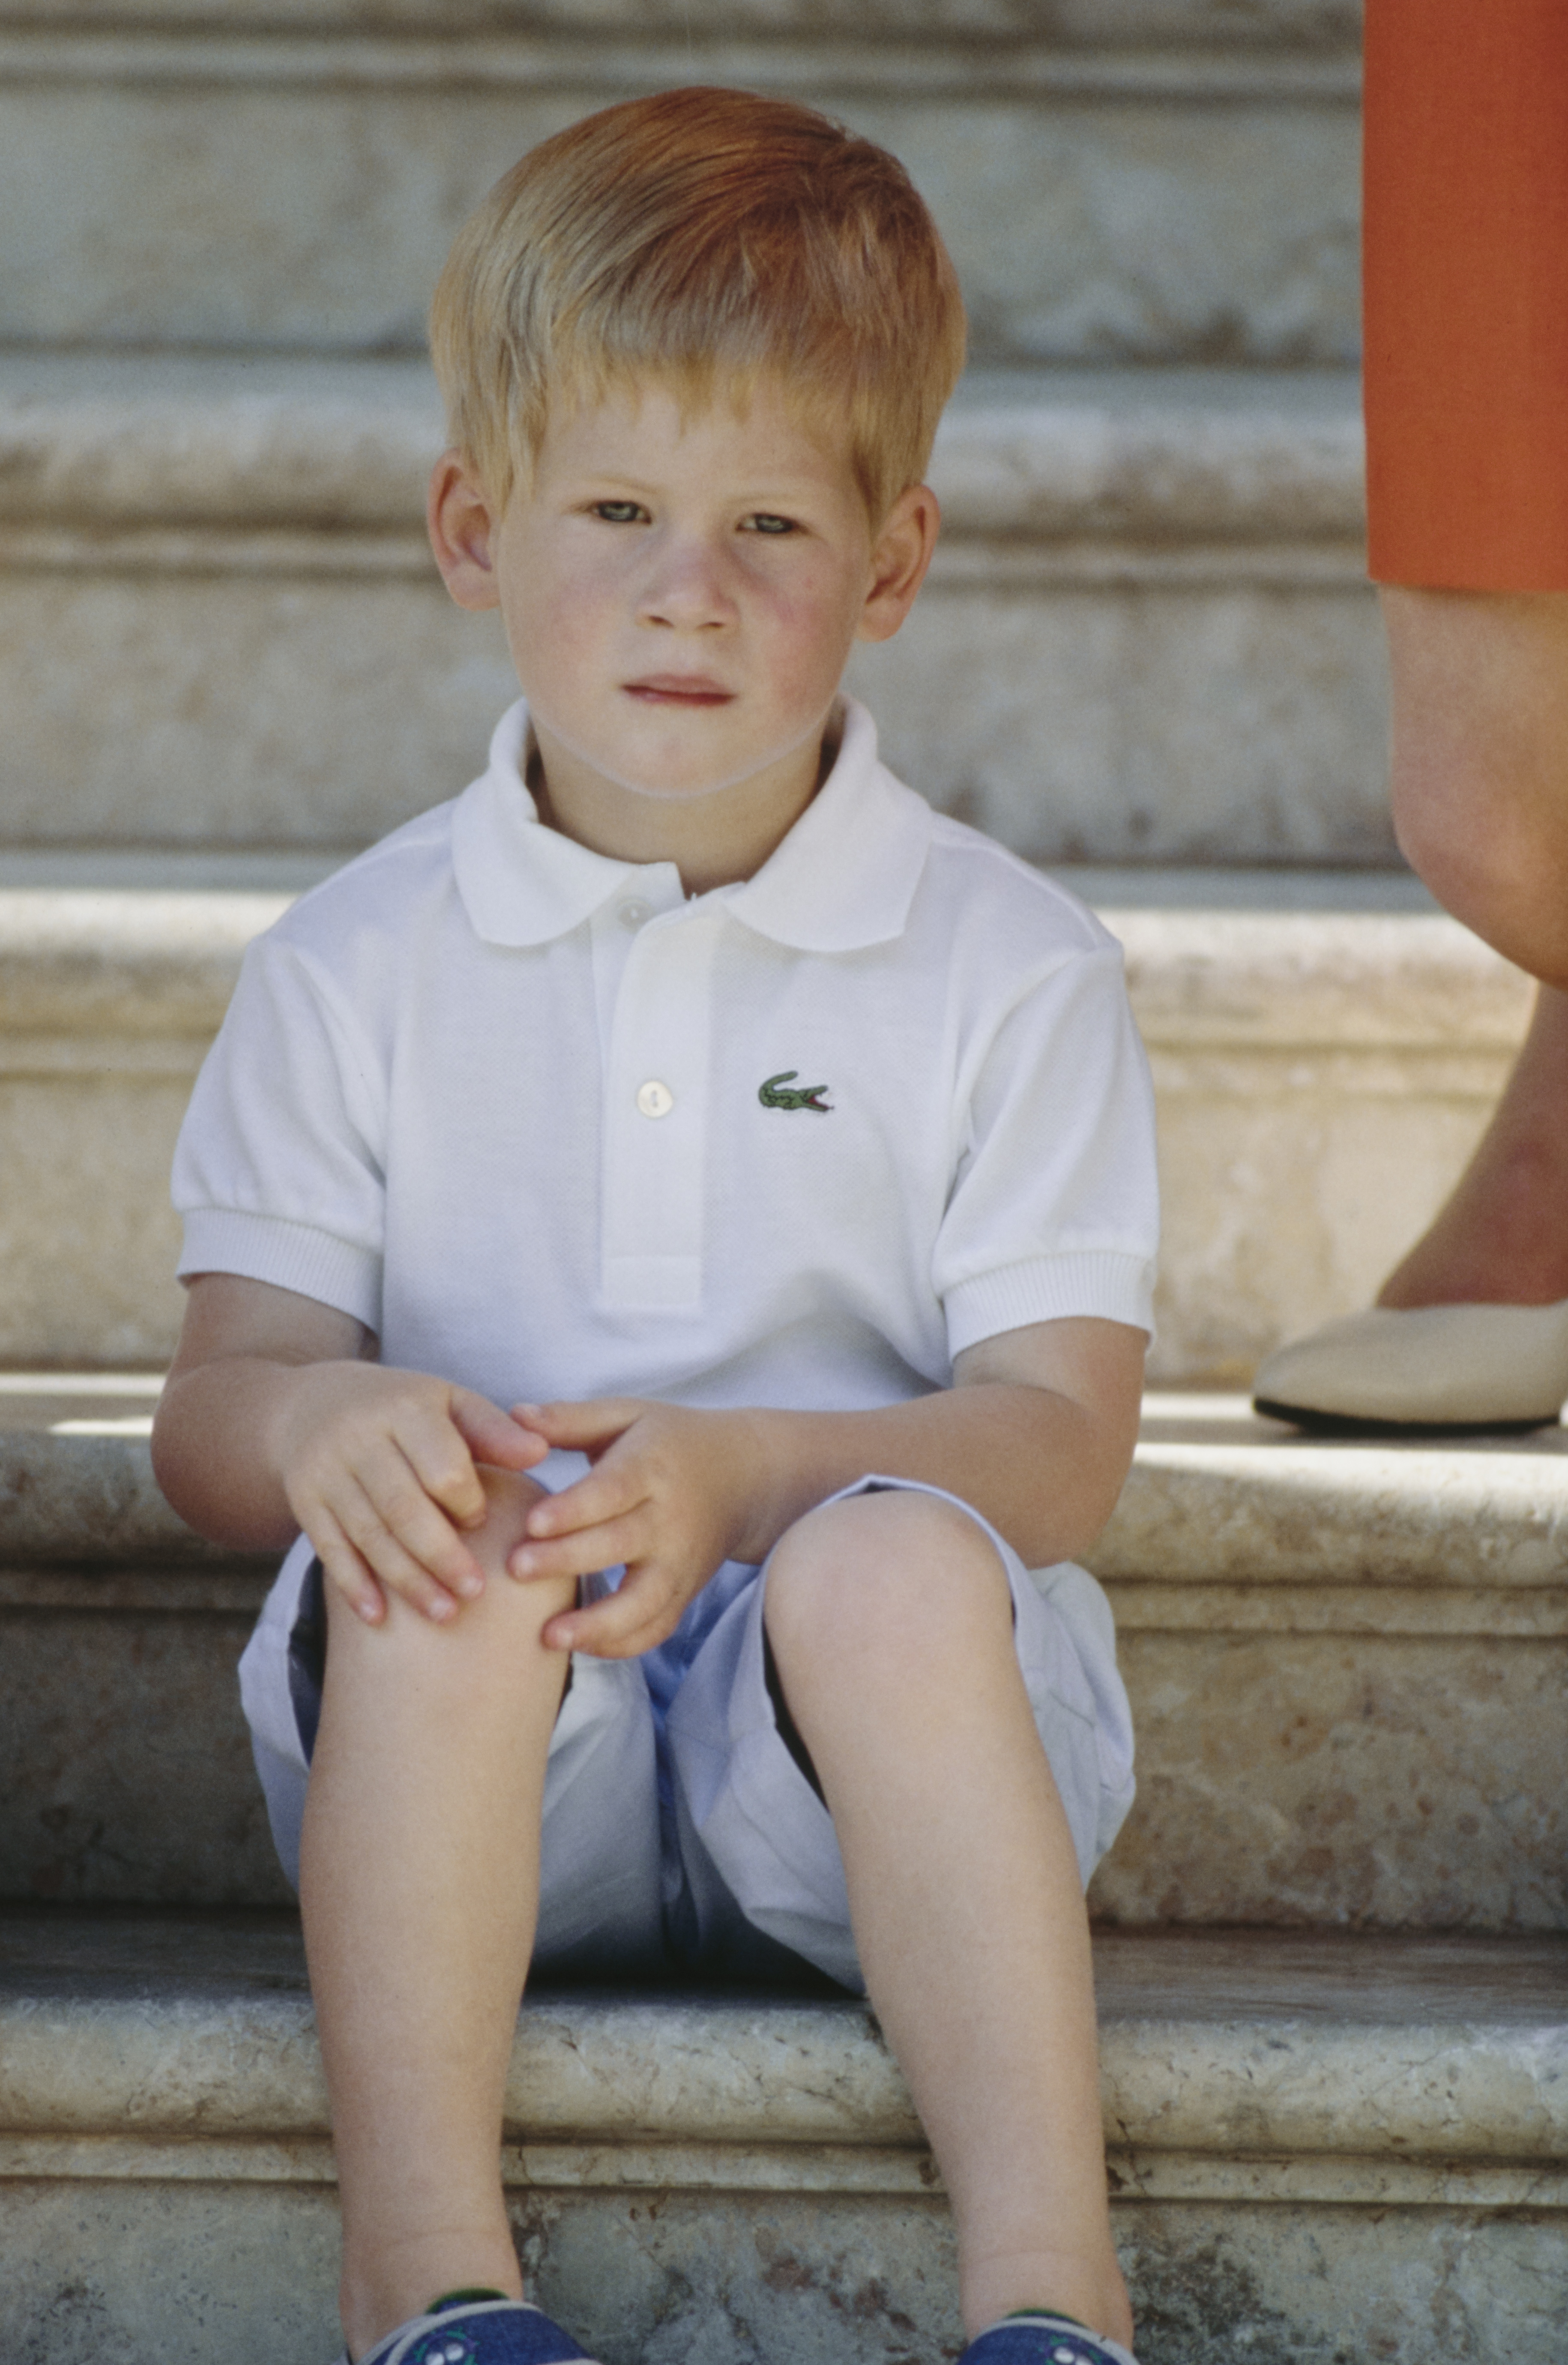 Prinz Harry am 13. August 1988 in Palma de Mallorca, Spanien | Quelle: Getty Images